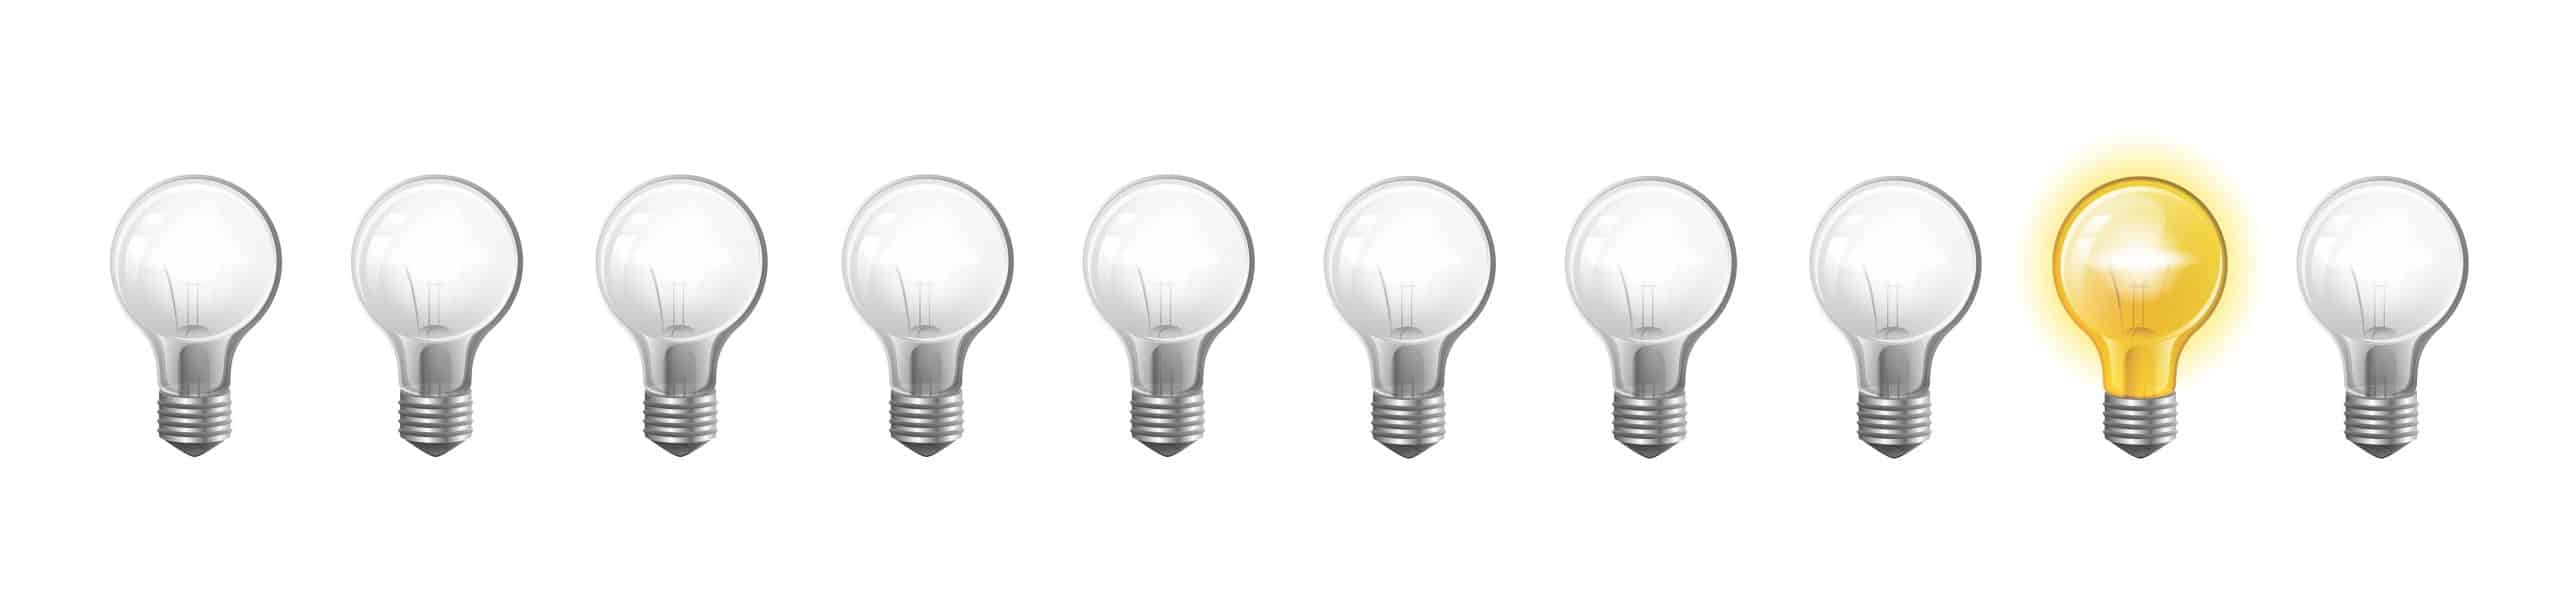 10 light bulbs in a row: 8 off, 1 on, 1 off